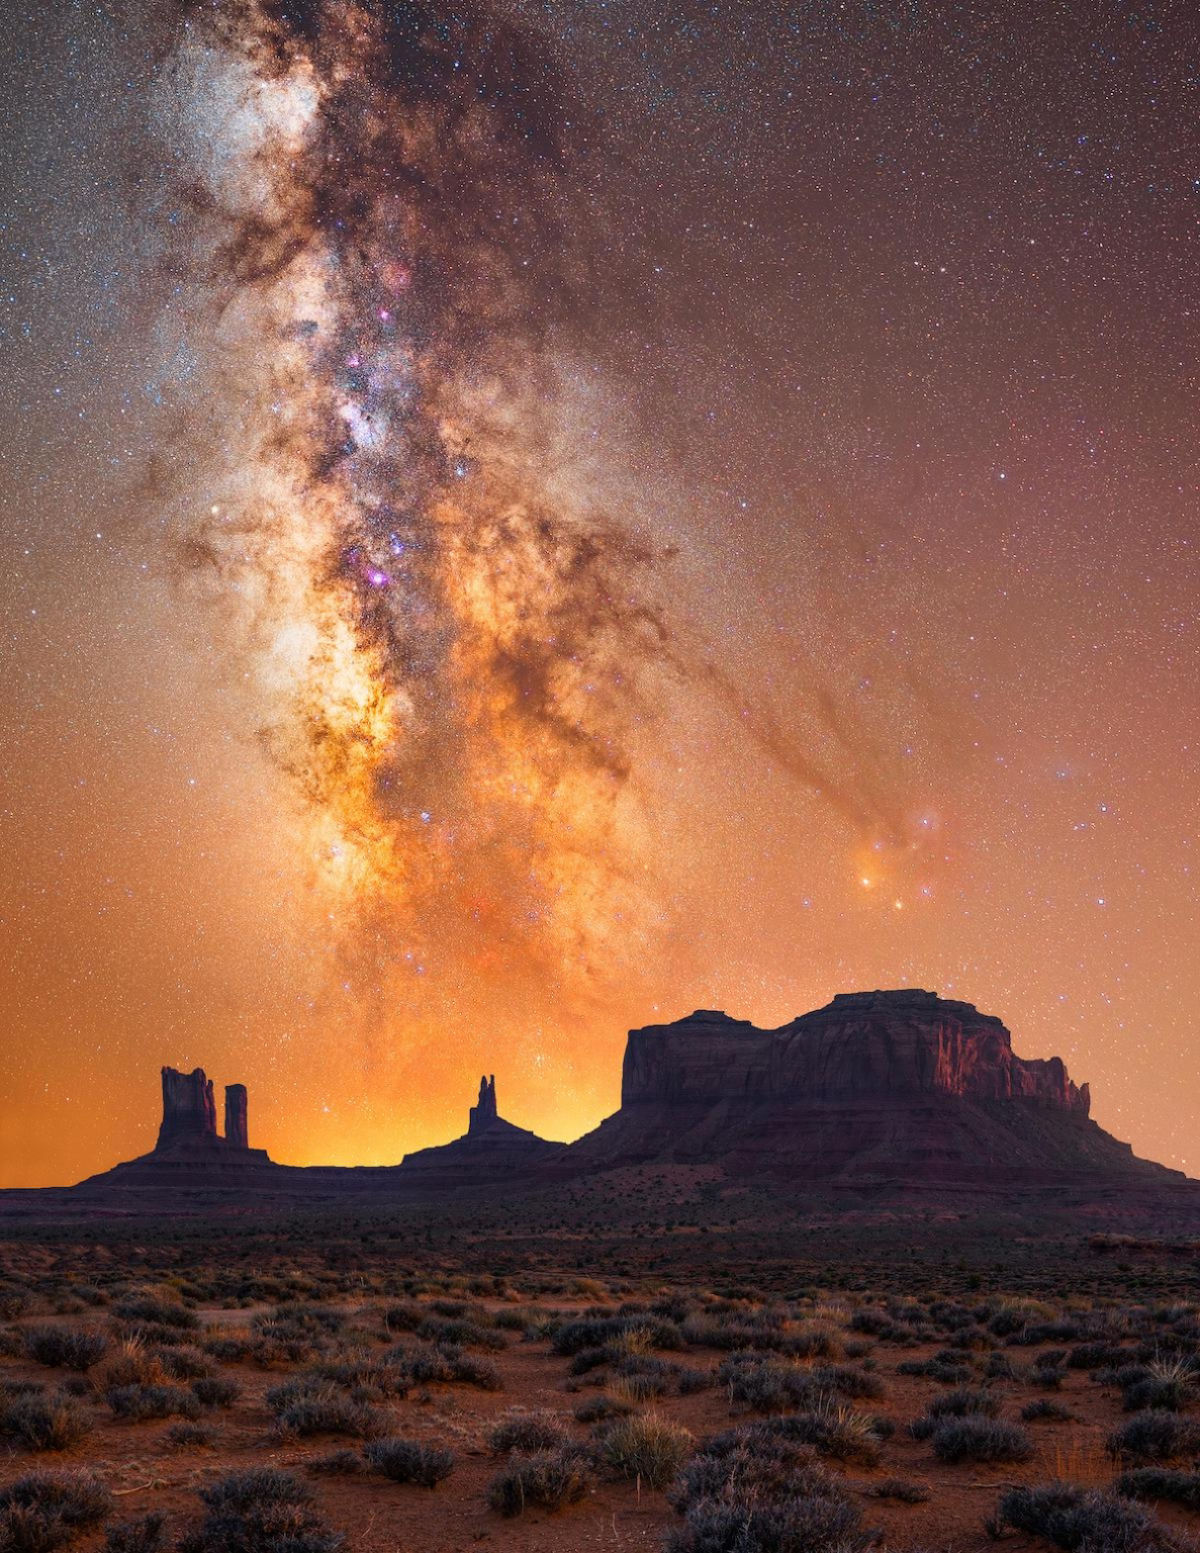 Astrofotografia incrvel mostra a beleza impetuosa de Monument Valley, no Arizona 02